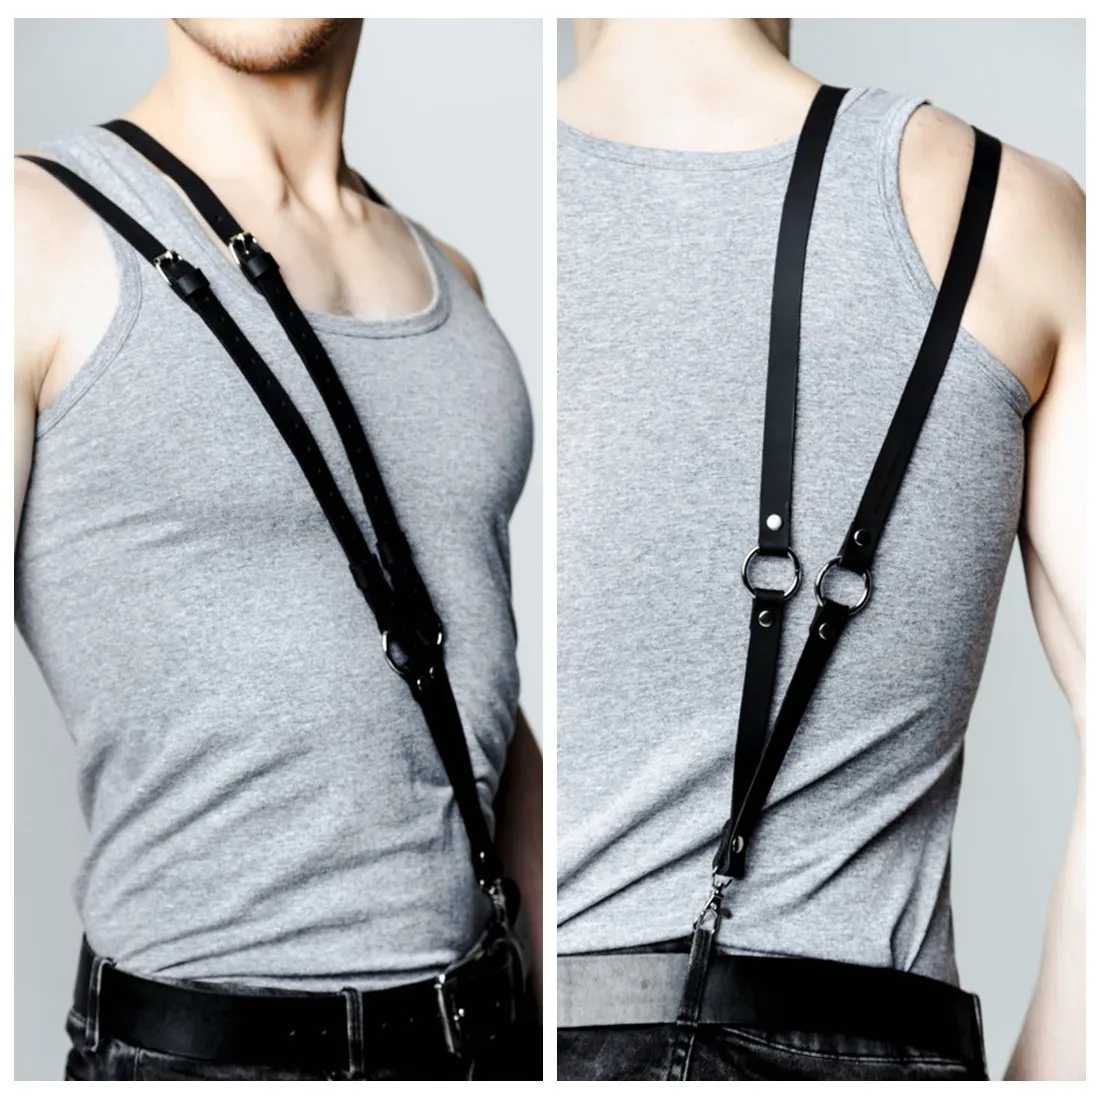 Black Vintage Leather Suspenders Braces Shoulder Strap Belt Harness For Men  